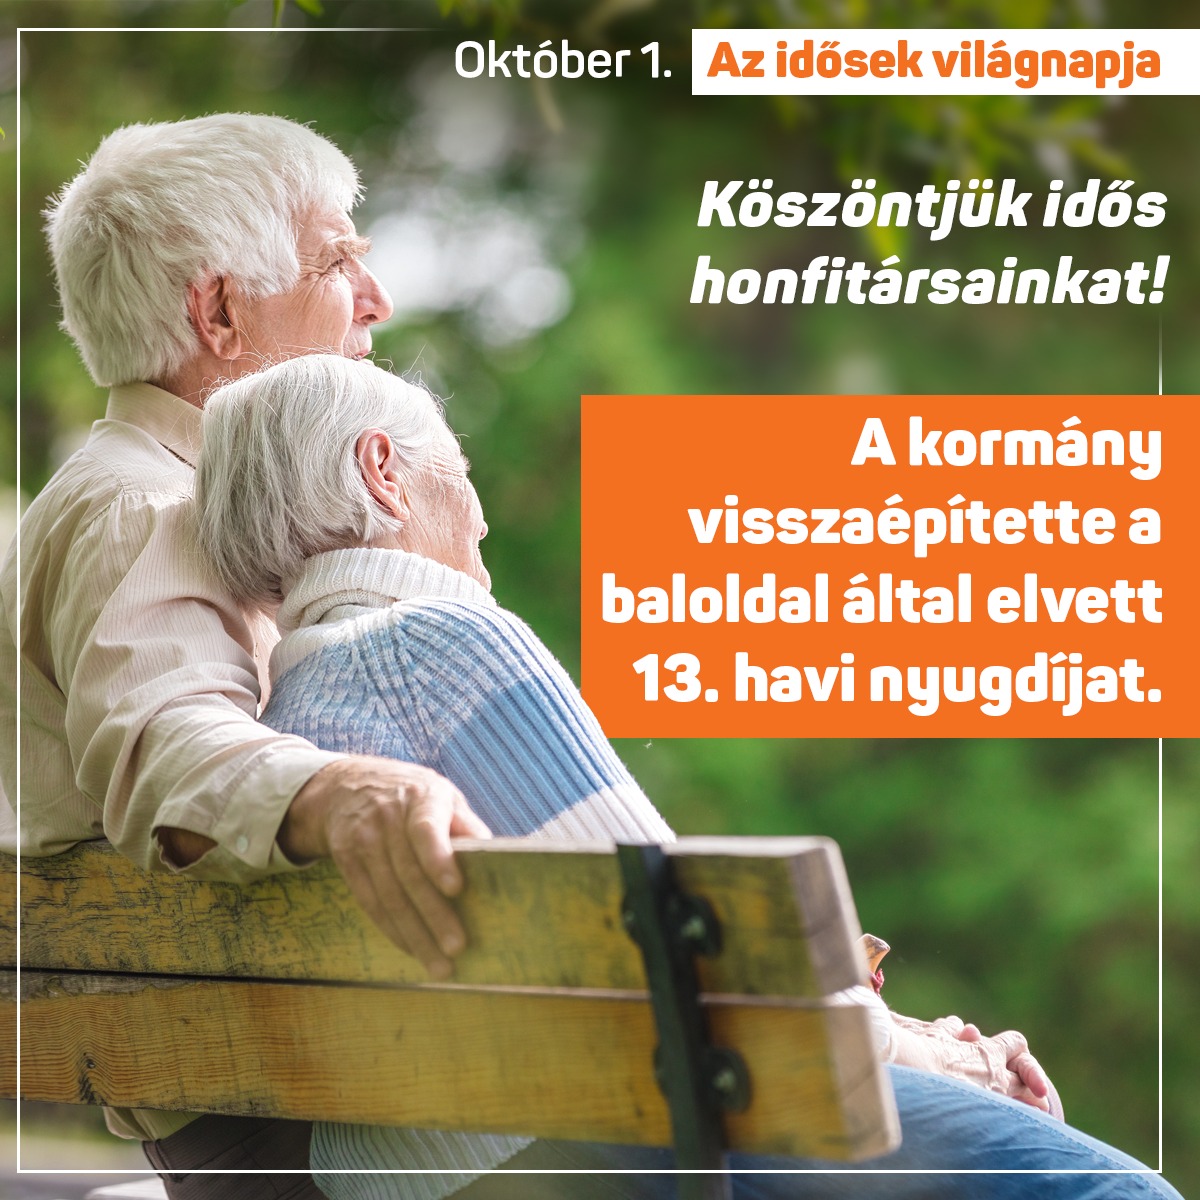 Kiállunk a nyugdíjasok érdekeiért és megvédjük a juttatásaikat! Megbecsüljük idős honfitársainkat!